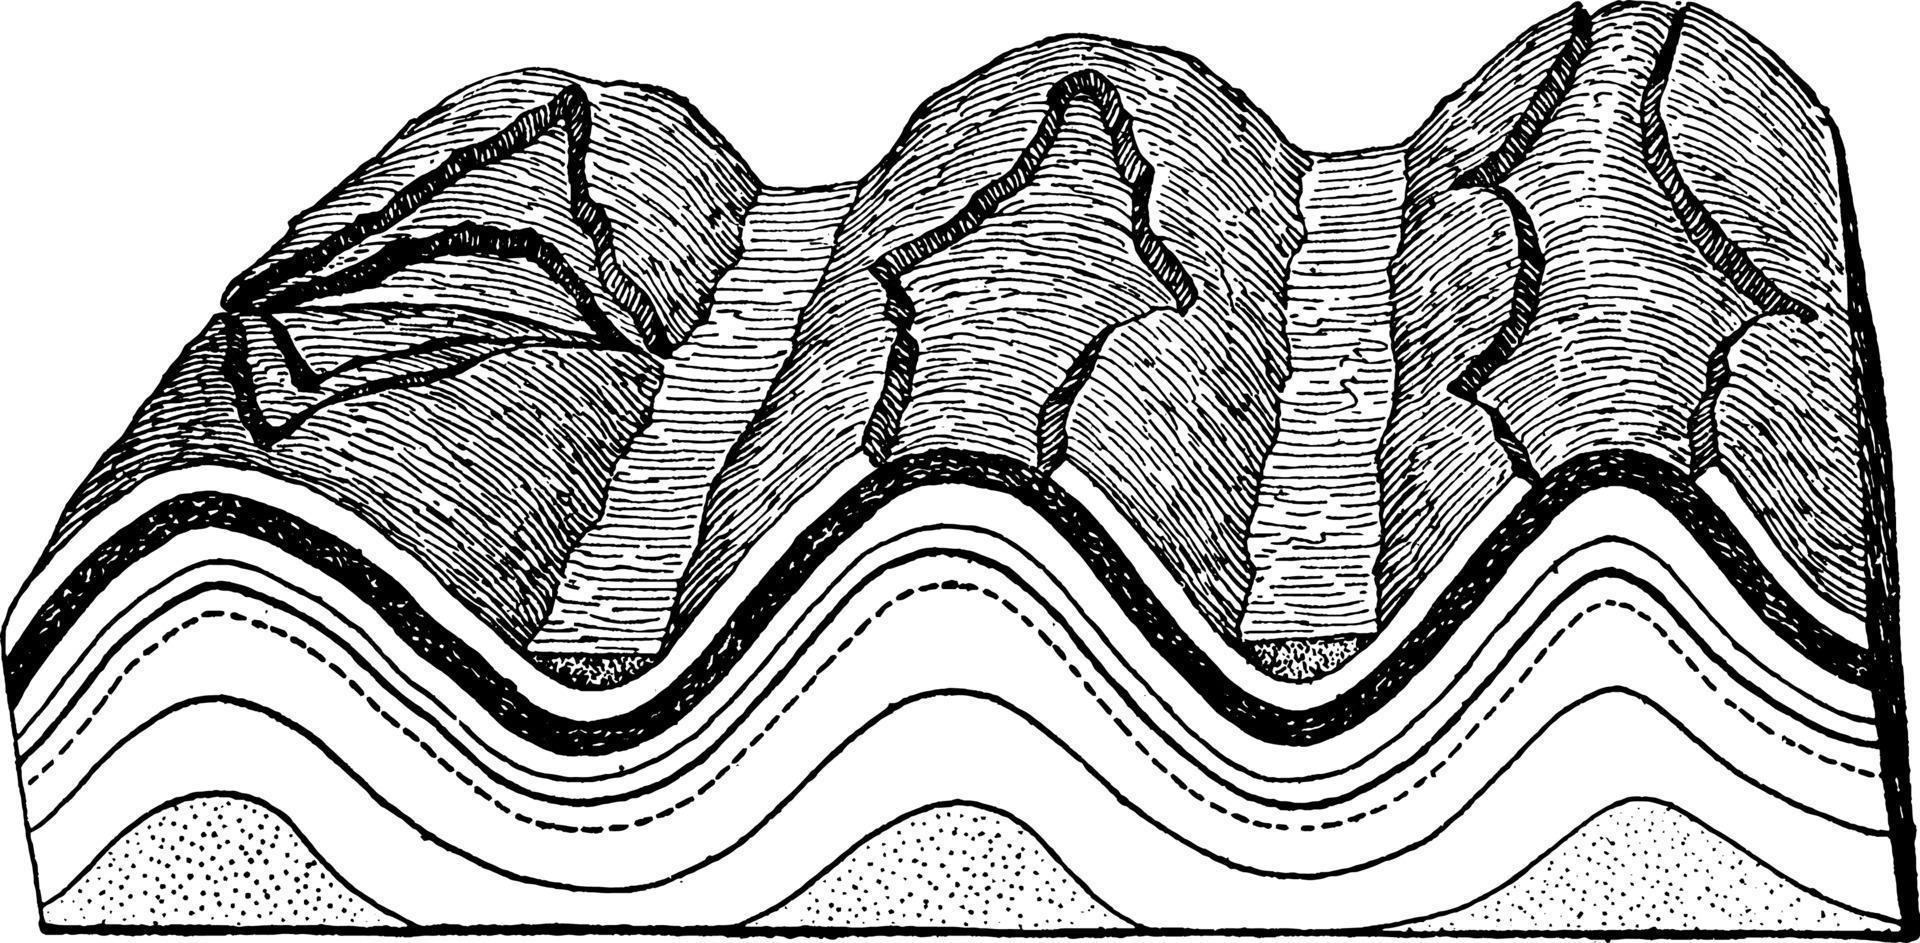 sterogramme de montagne sterogramme des montagnes du jura, illustration vintage vecteur